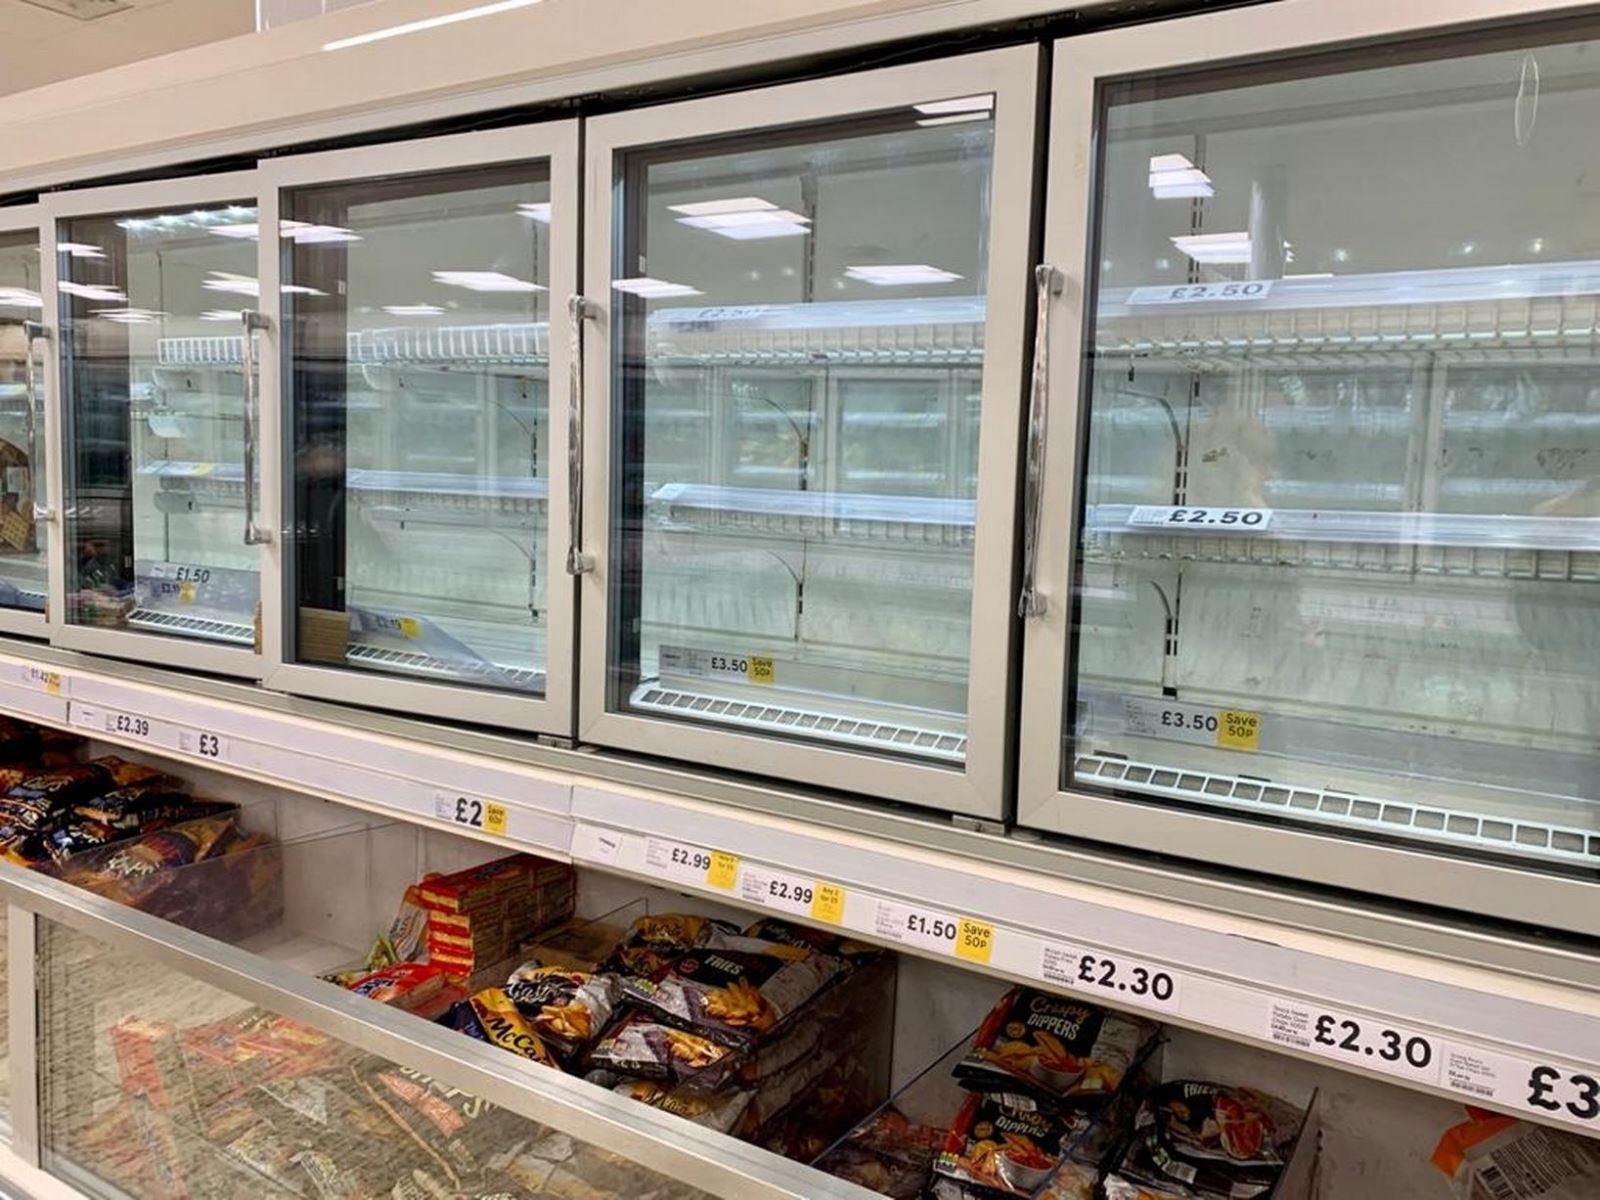 Đồ hộp, thực phẩm đông lạnh là hai trong số nhiều mặt hàng thiết yếu hết bay tại các siêu thị trong mùa dịch COVID-19. Ảnh: GNP